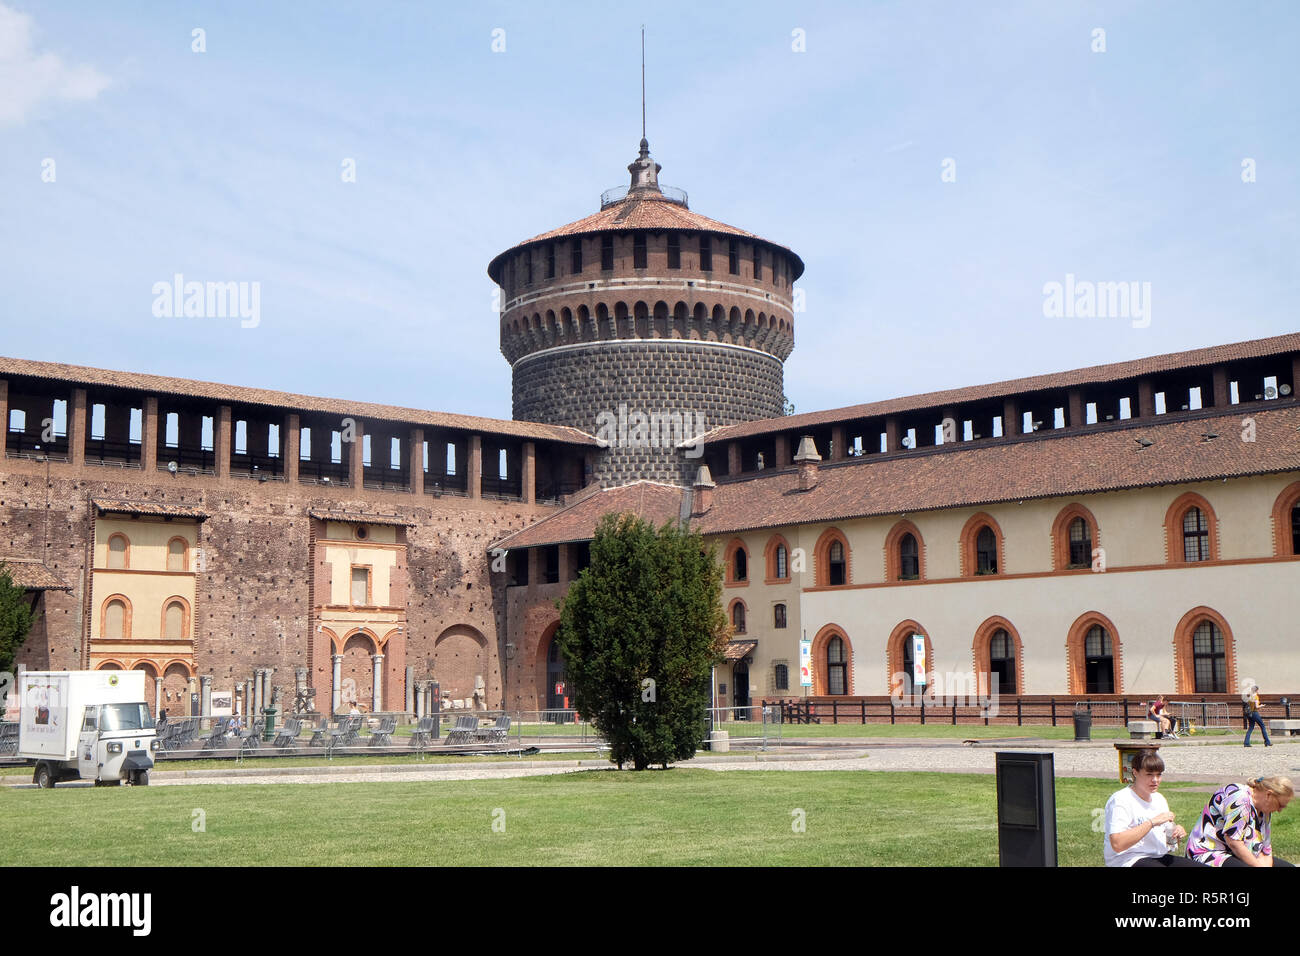 Castello Sforzesco di Milano, Italia, costruita nel XV secolo da Francesco Sforza, duca di Milano, sui resti di una trecentesca fortificazione Foto Stock